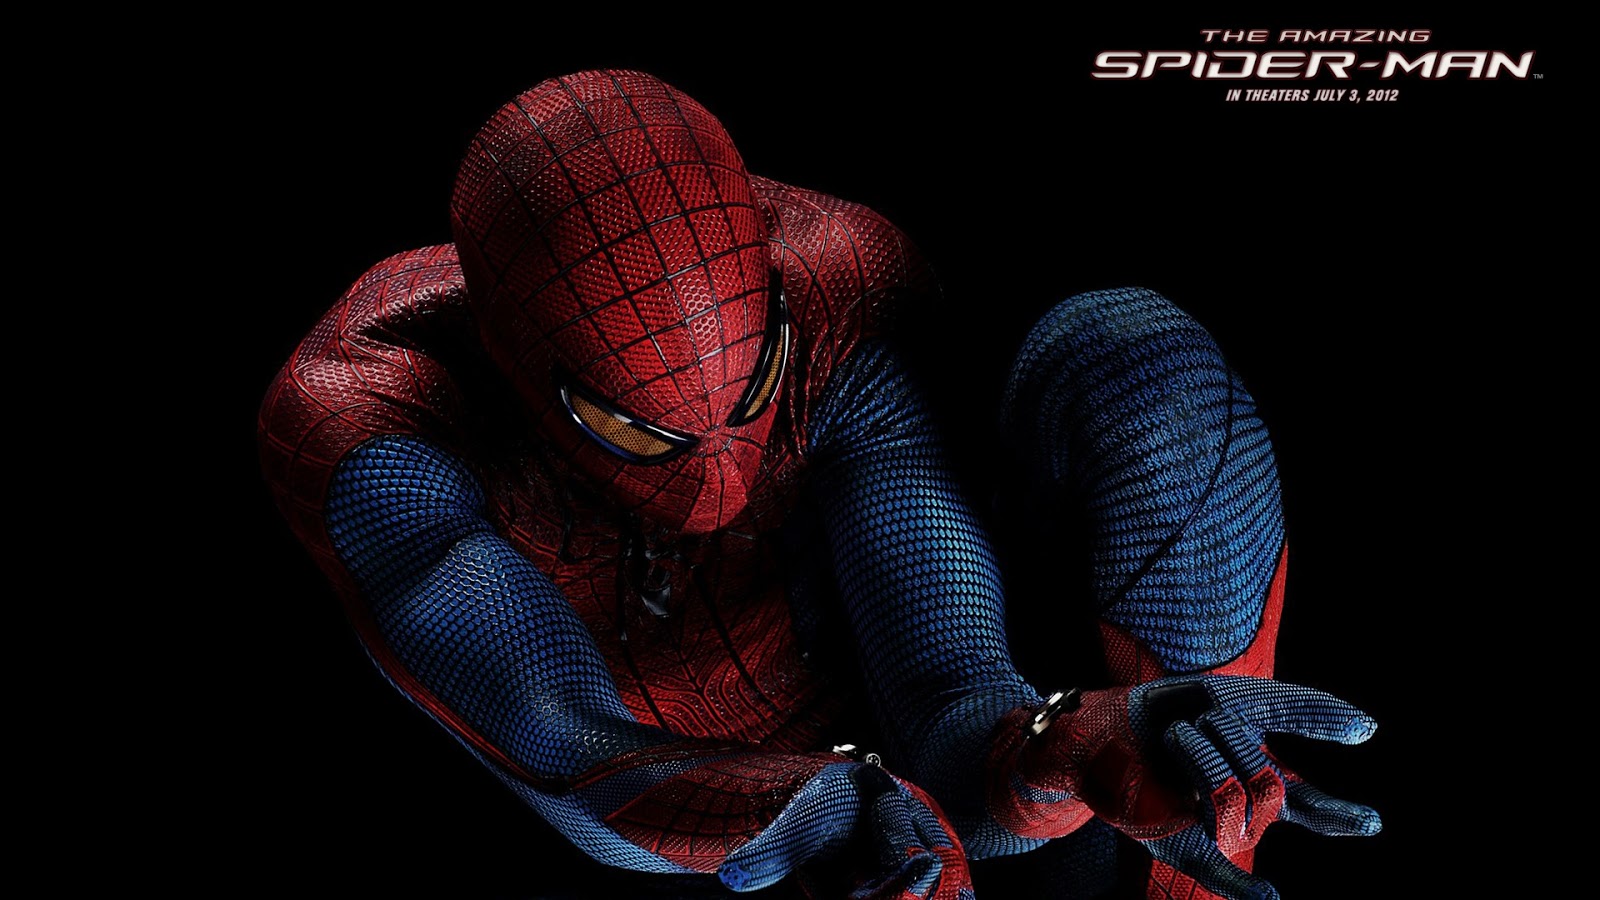 45+] Spider Man HD Wallpapers 1080p - WallpaperSafari